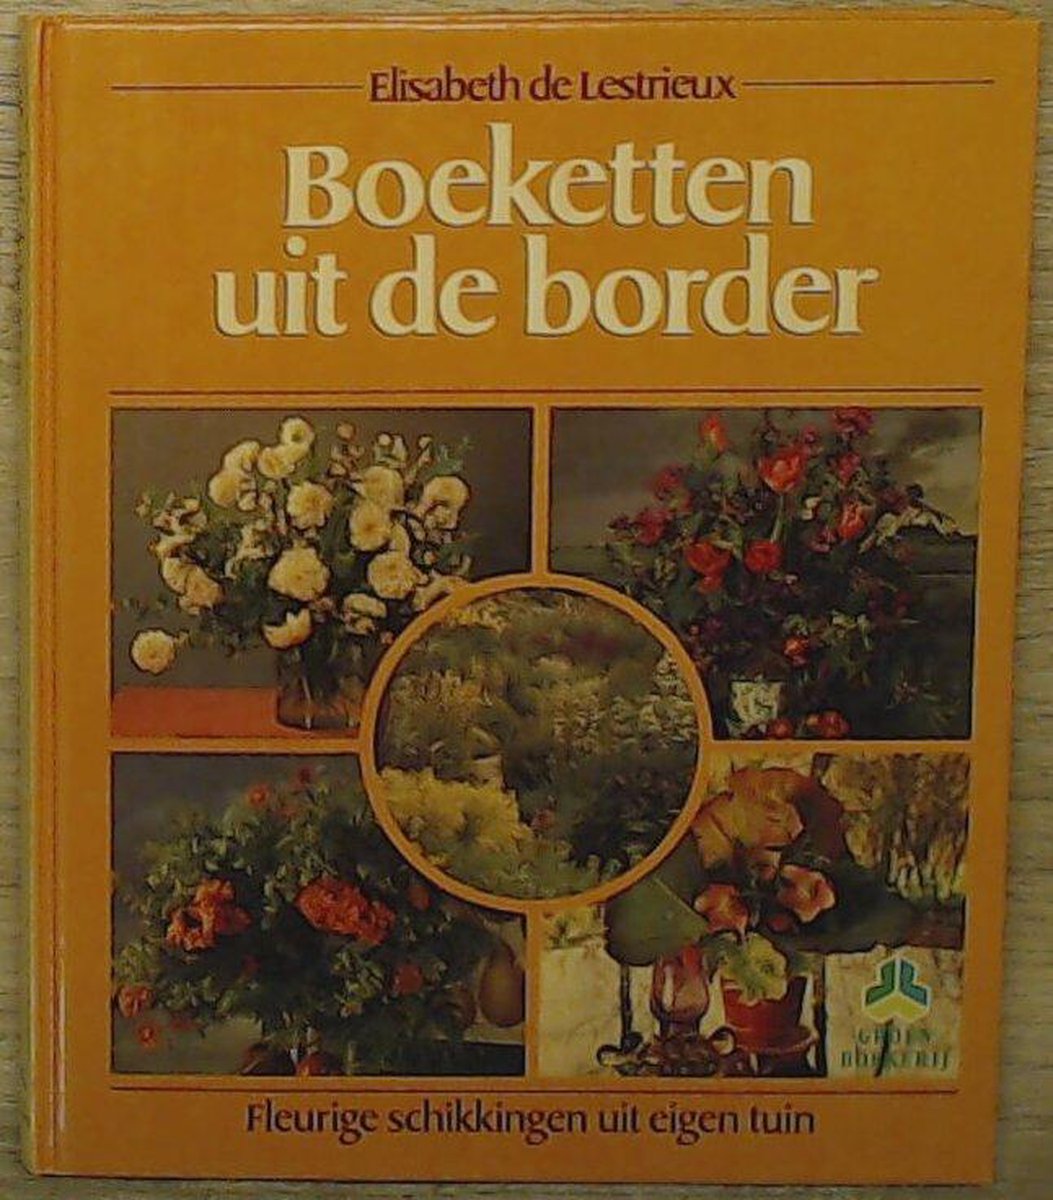 Boeketten uit de border